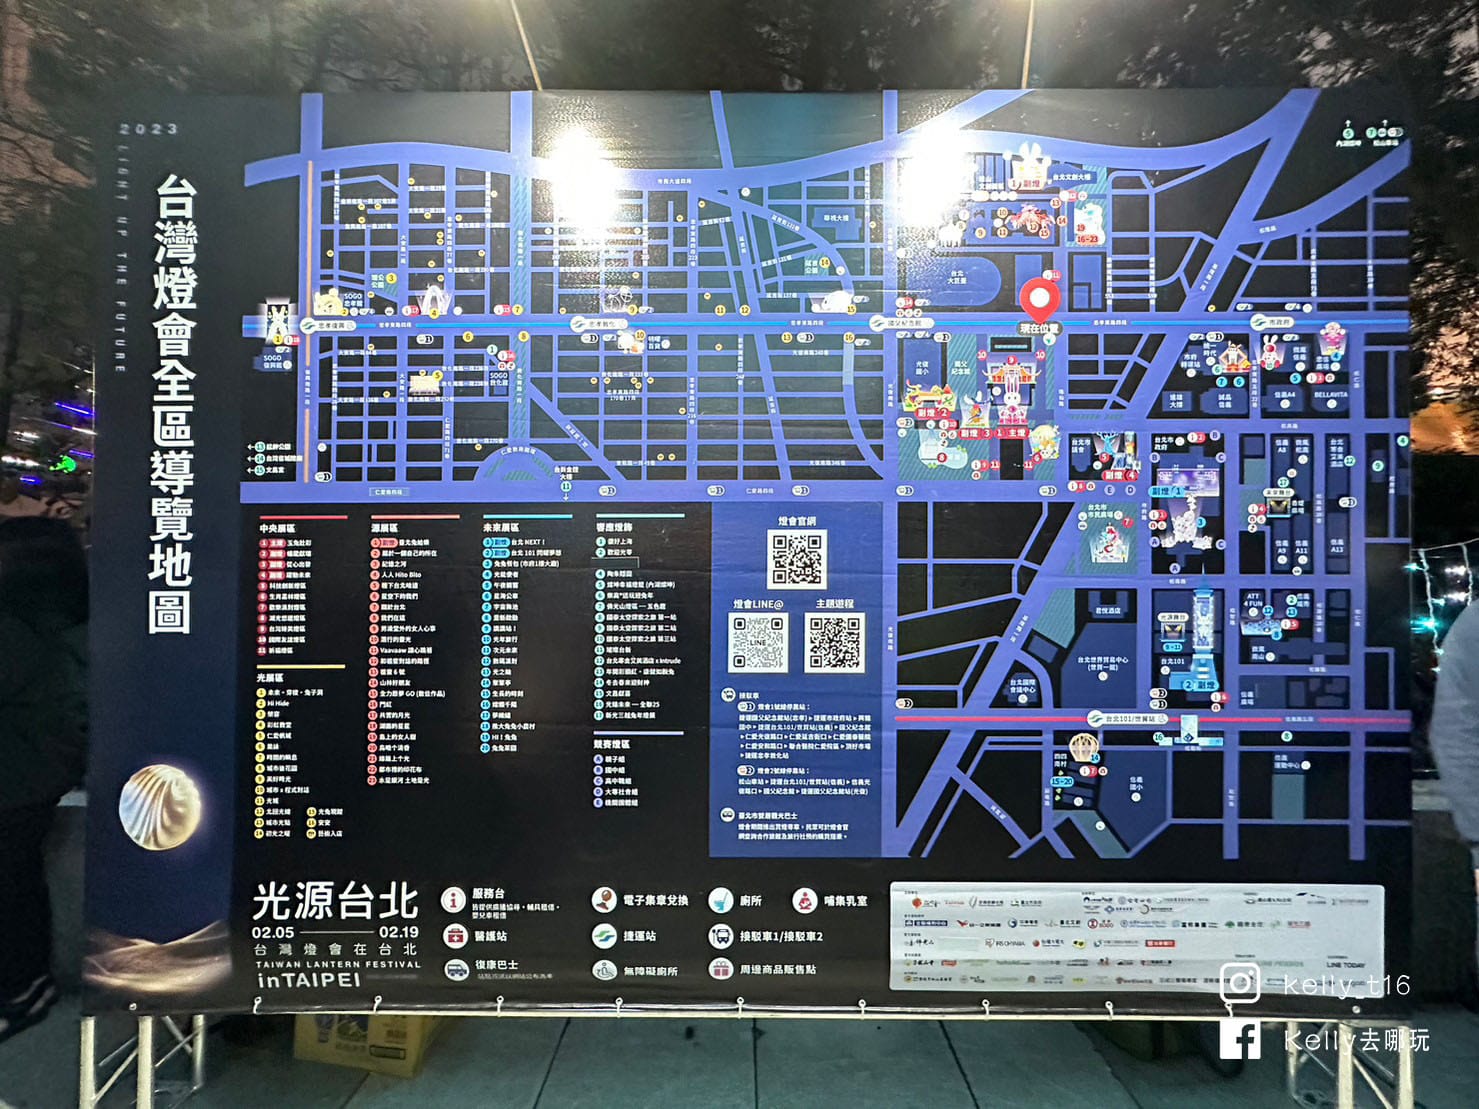 2023台灣燈會在台北「光源台北」主燈在哪裡?盤點4大燈區全攻略，超過300件作品!